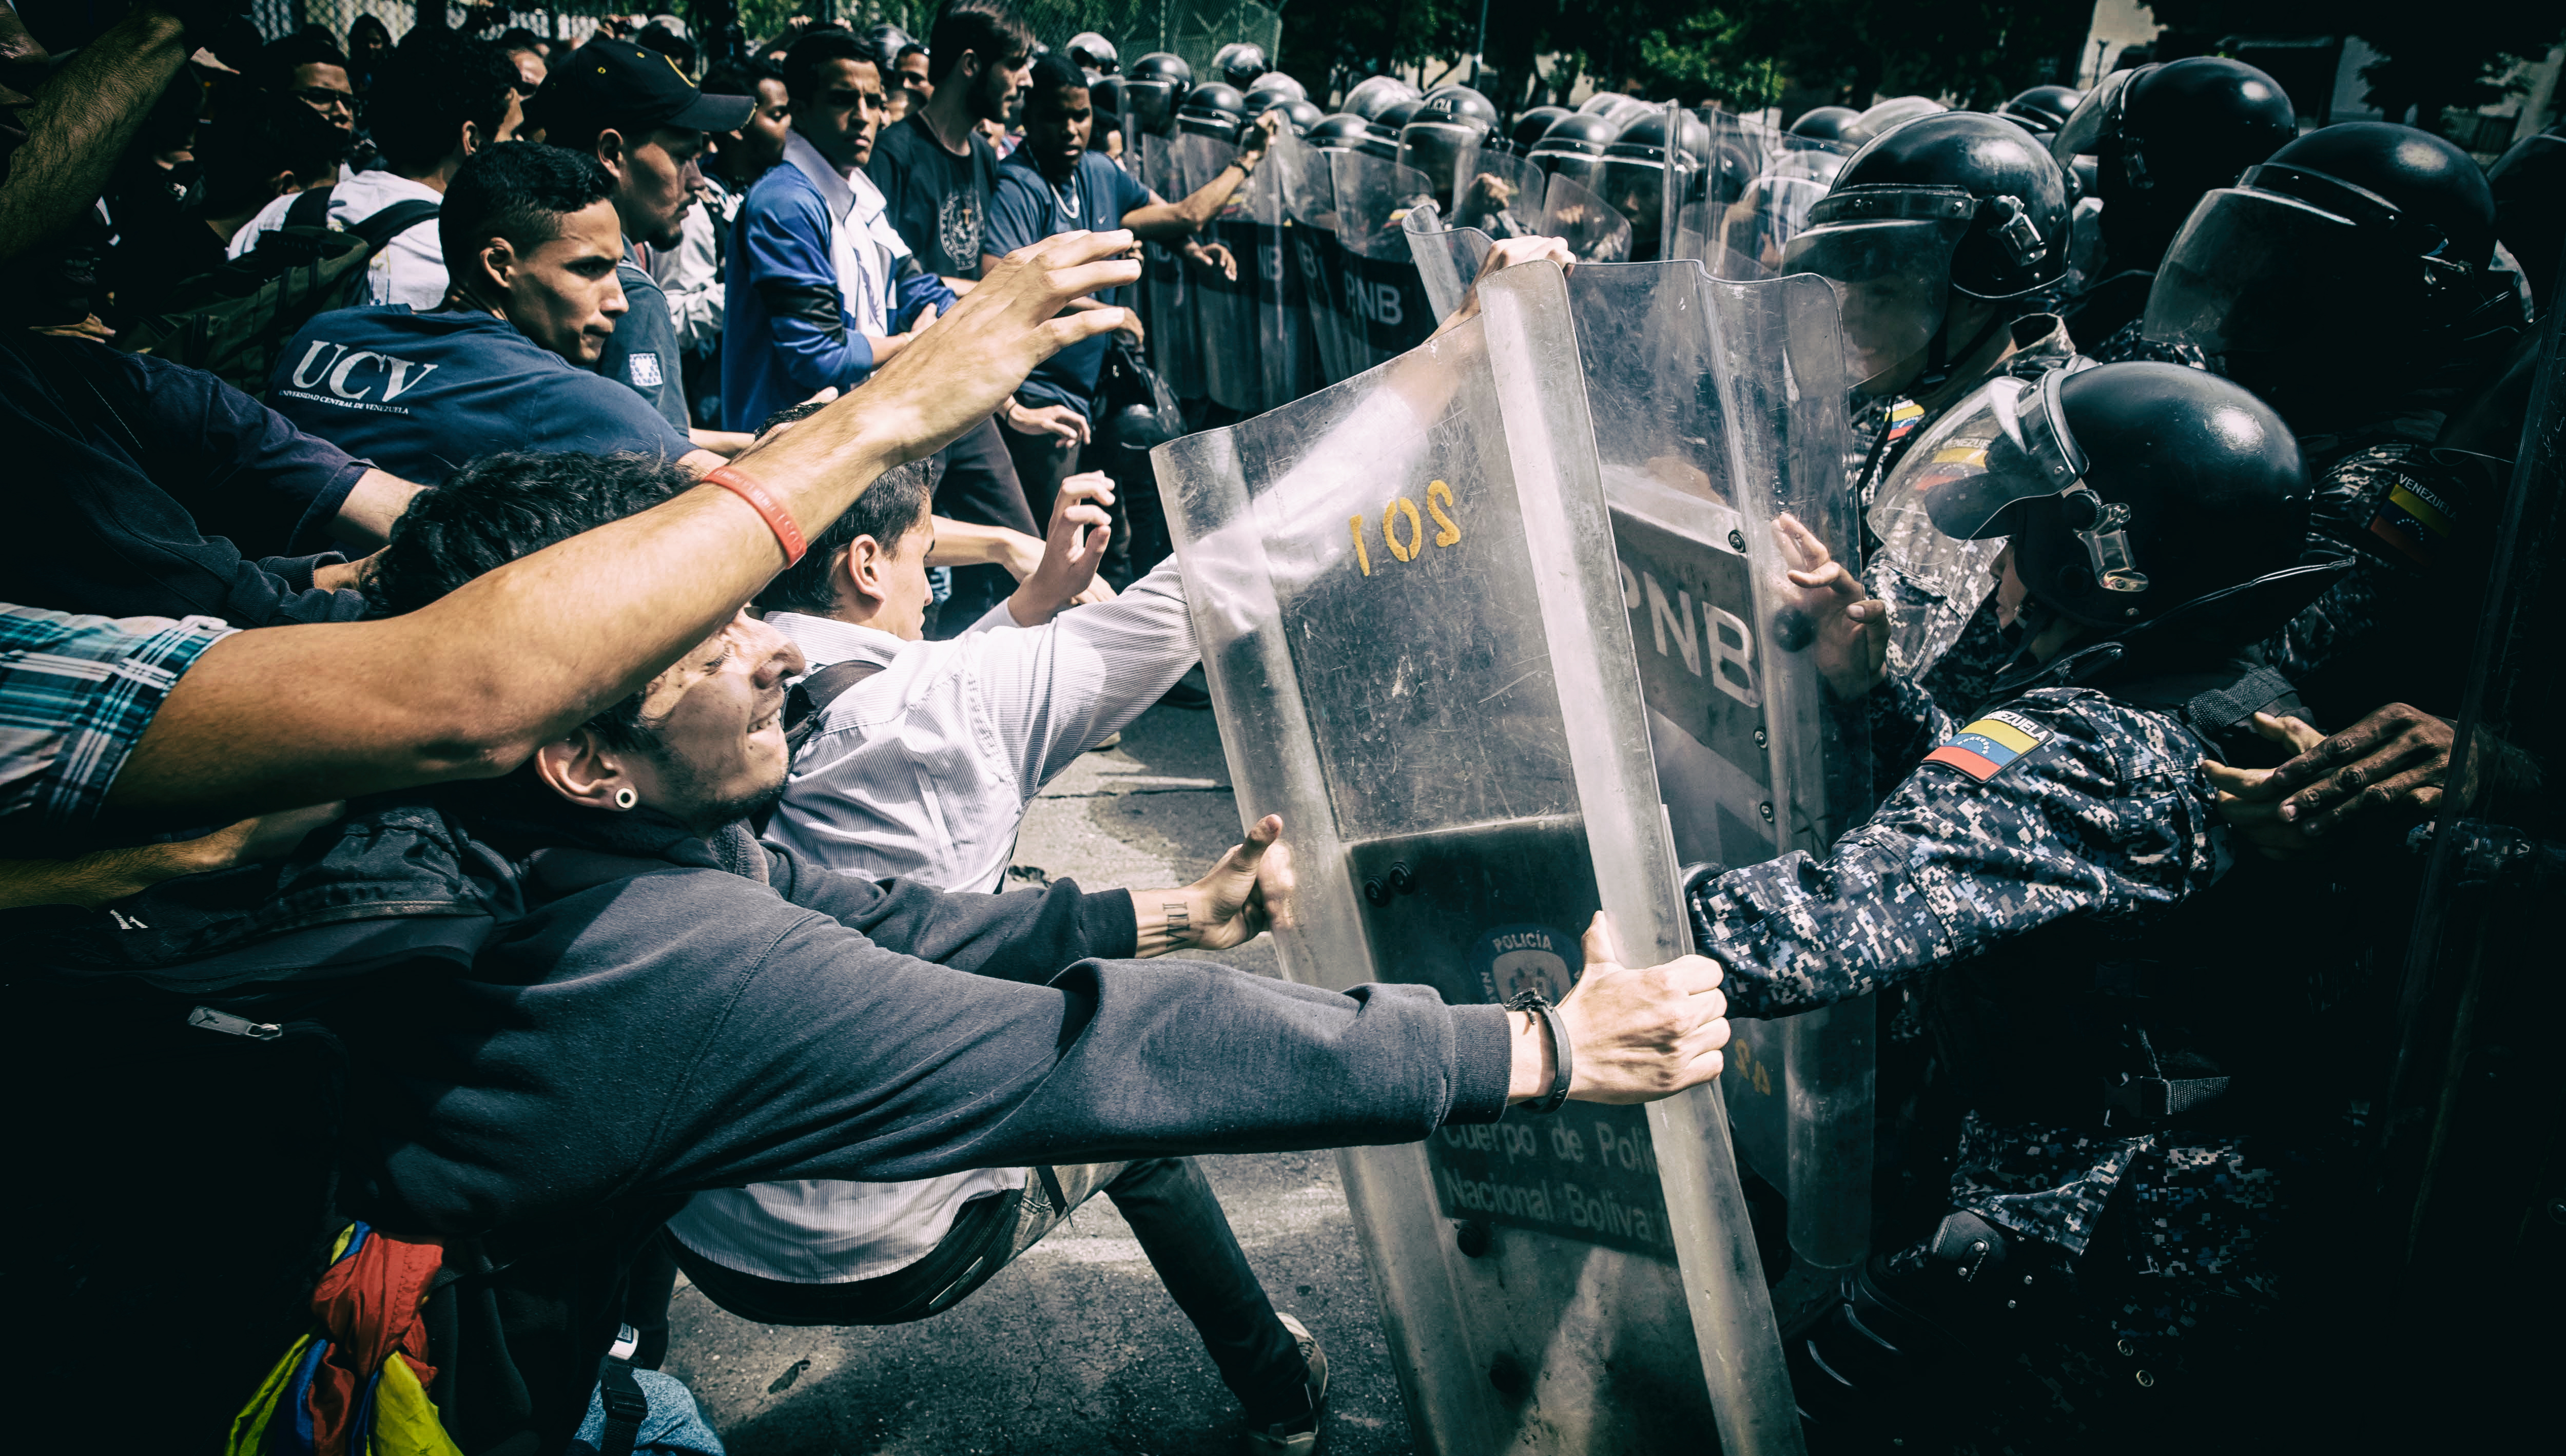 βενεζουέλα διαμαρτυρίες